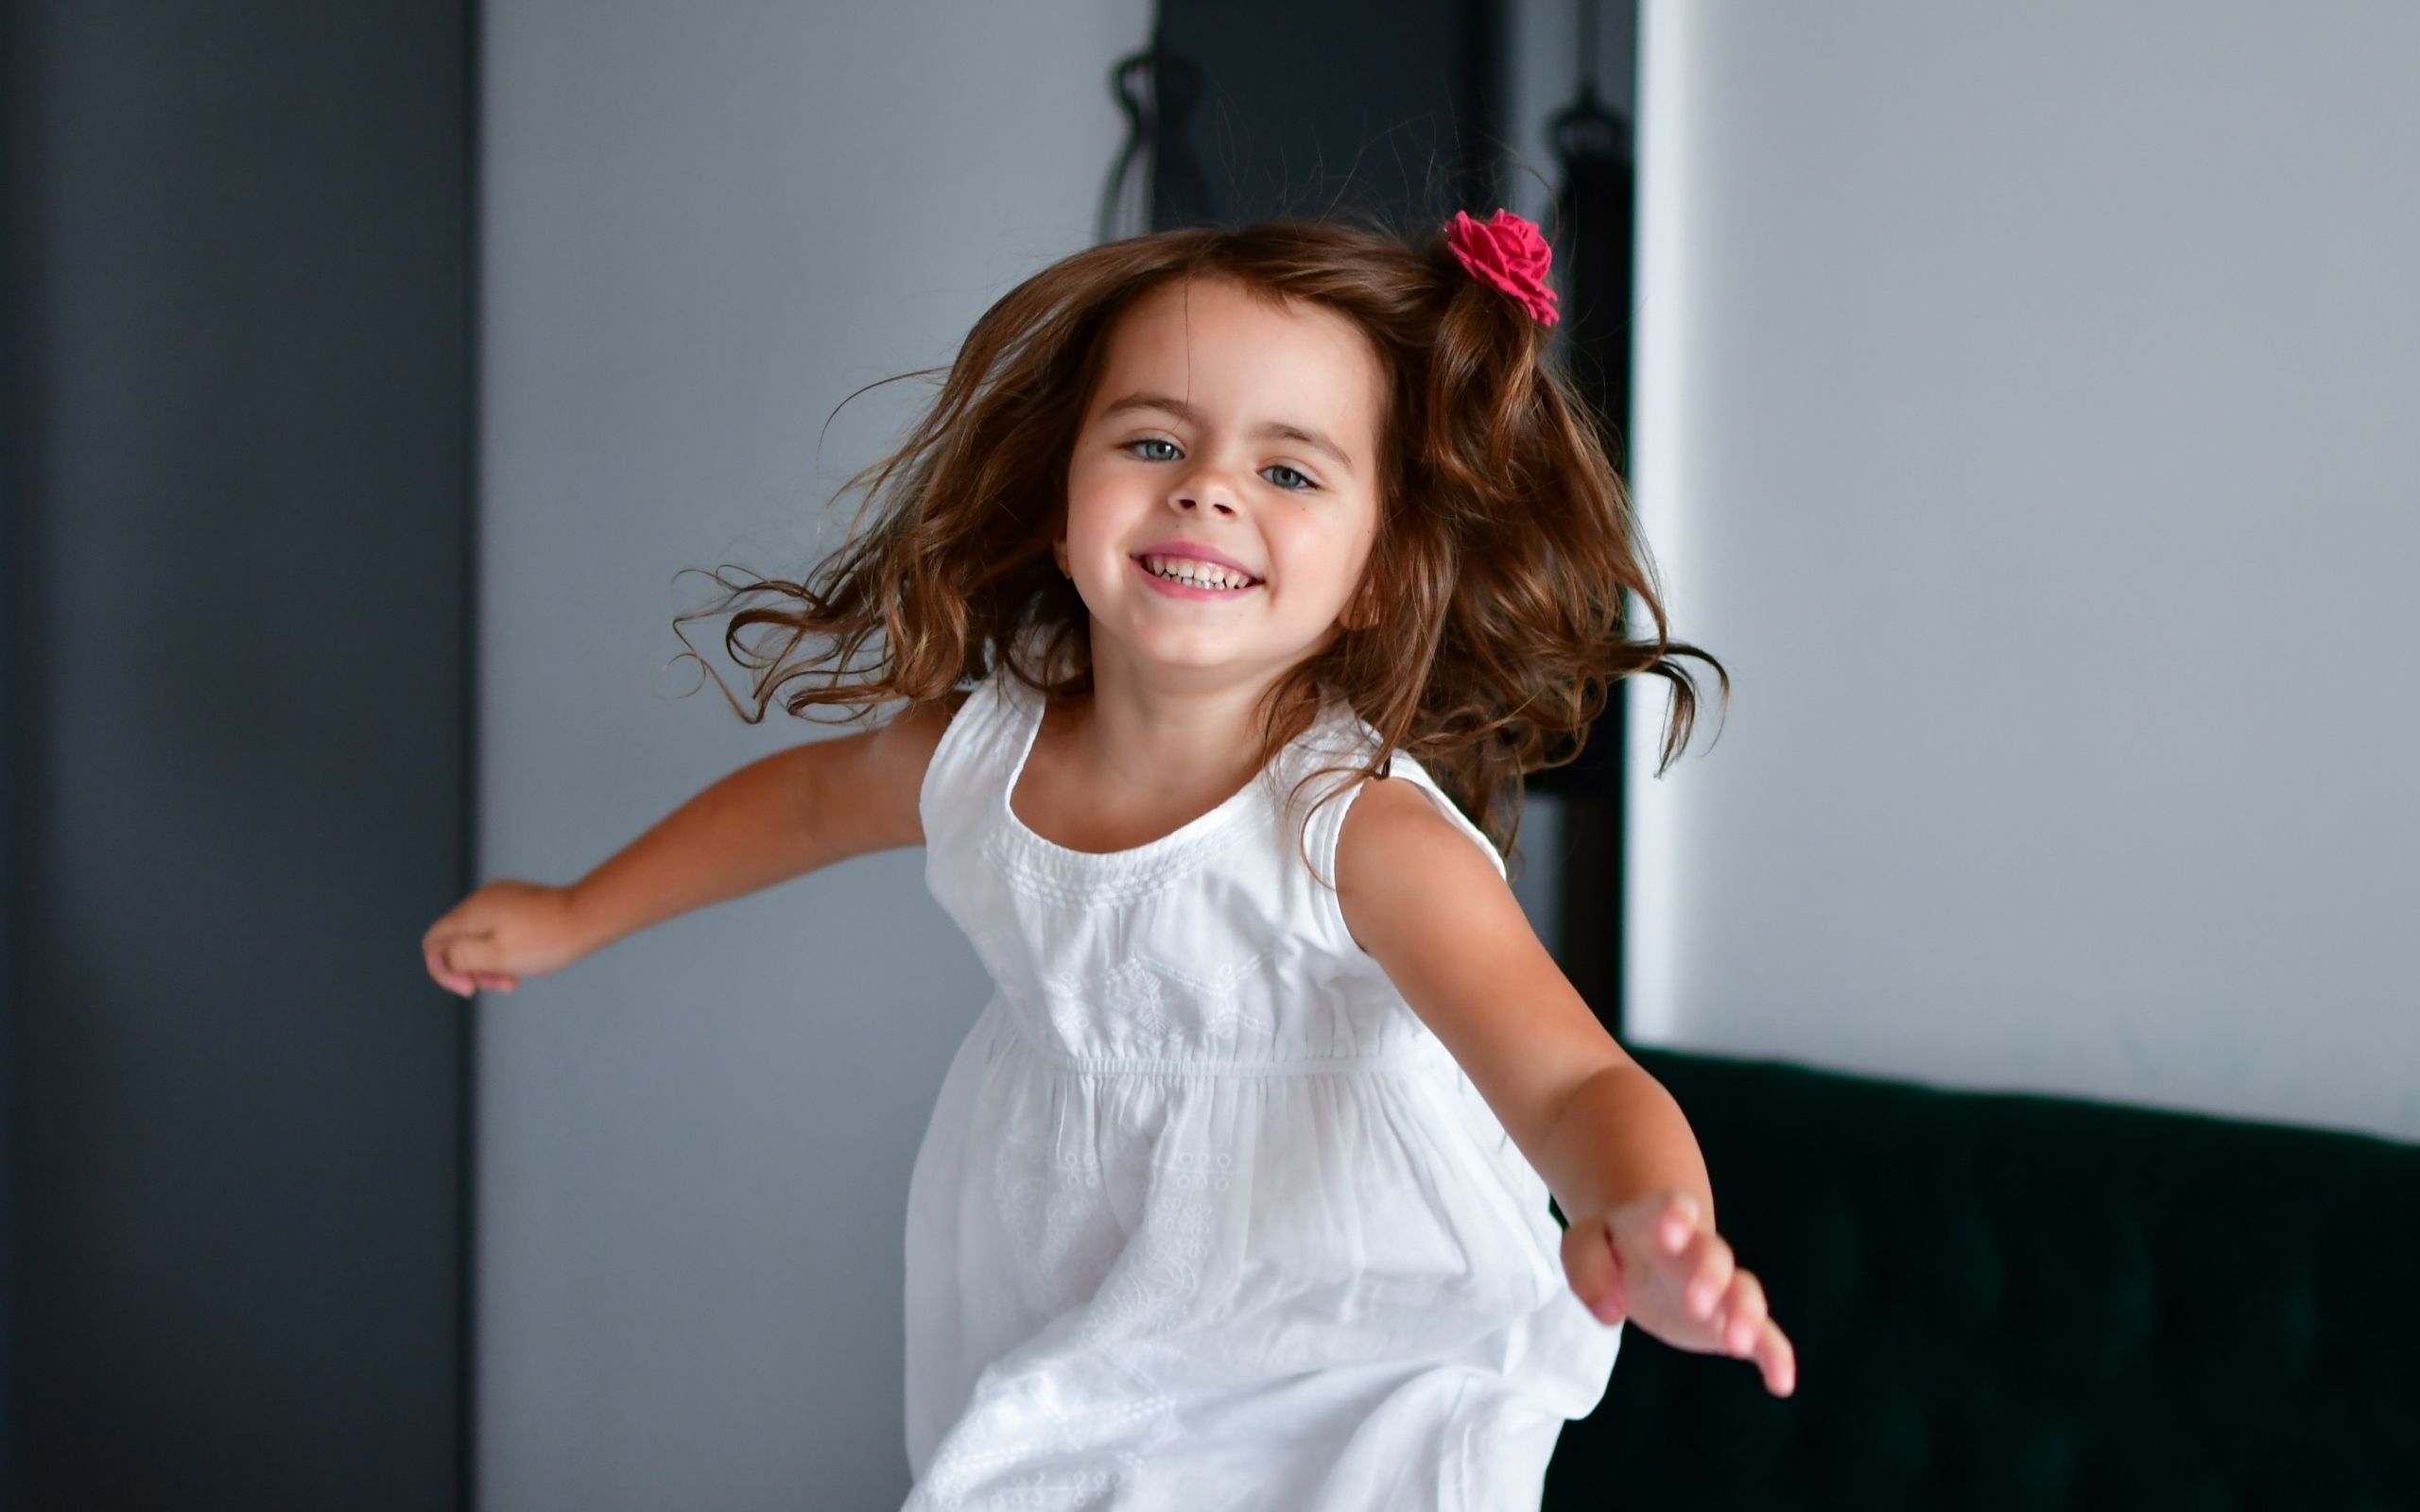 Маленькая веселая девочка в белом платье